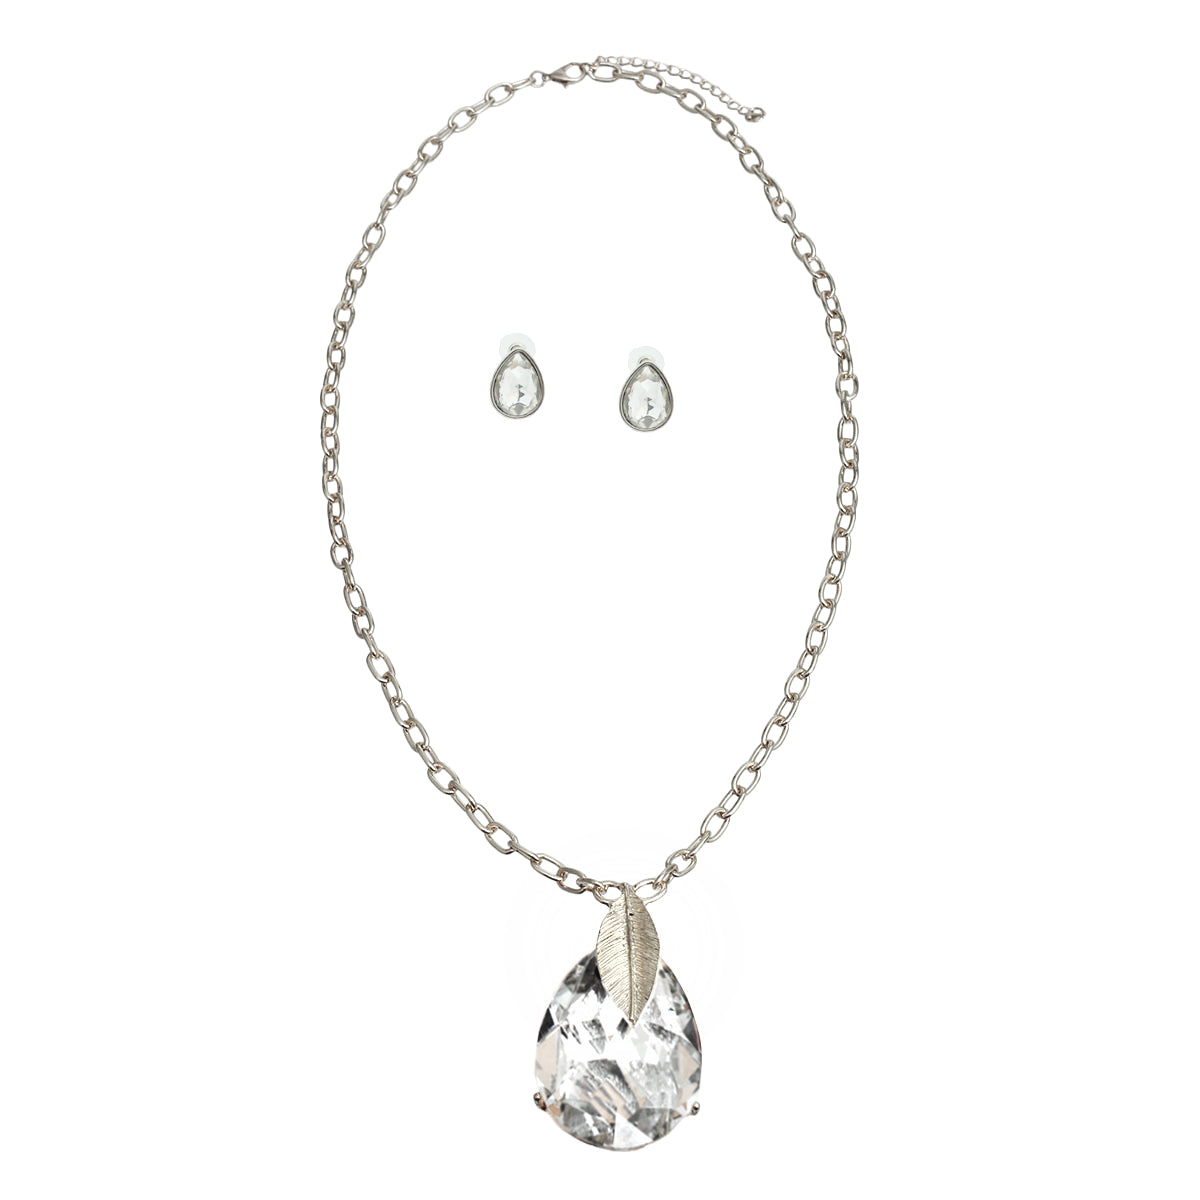 Silver Teardrop Long Chain Necklace